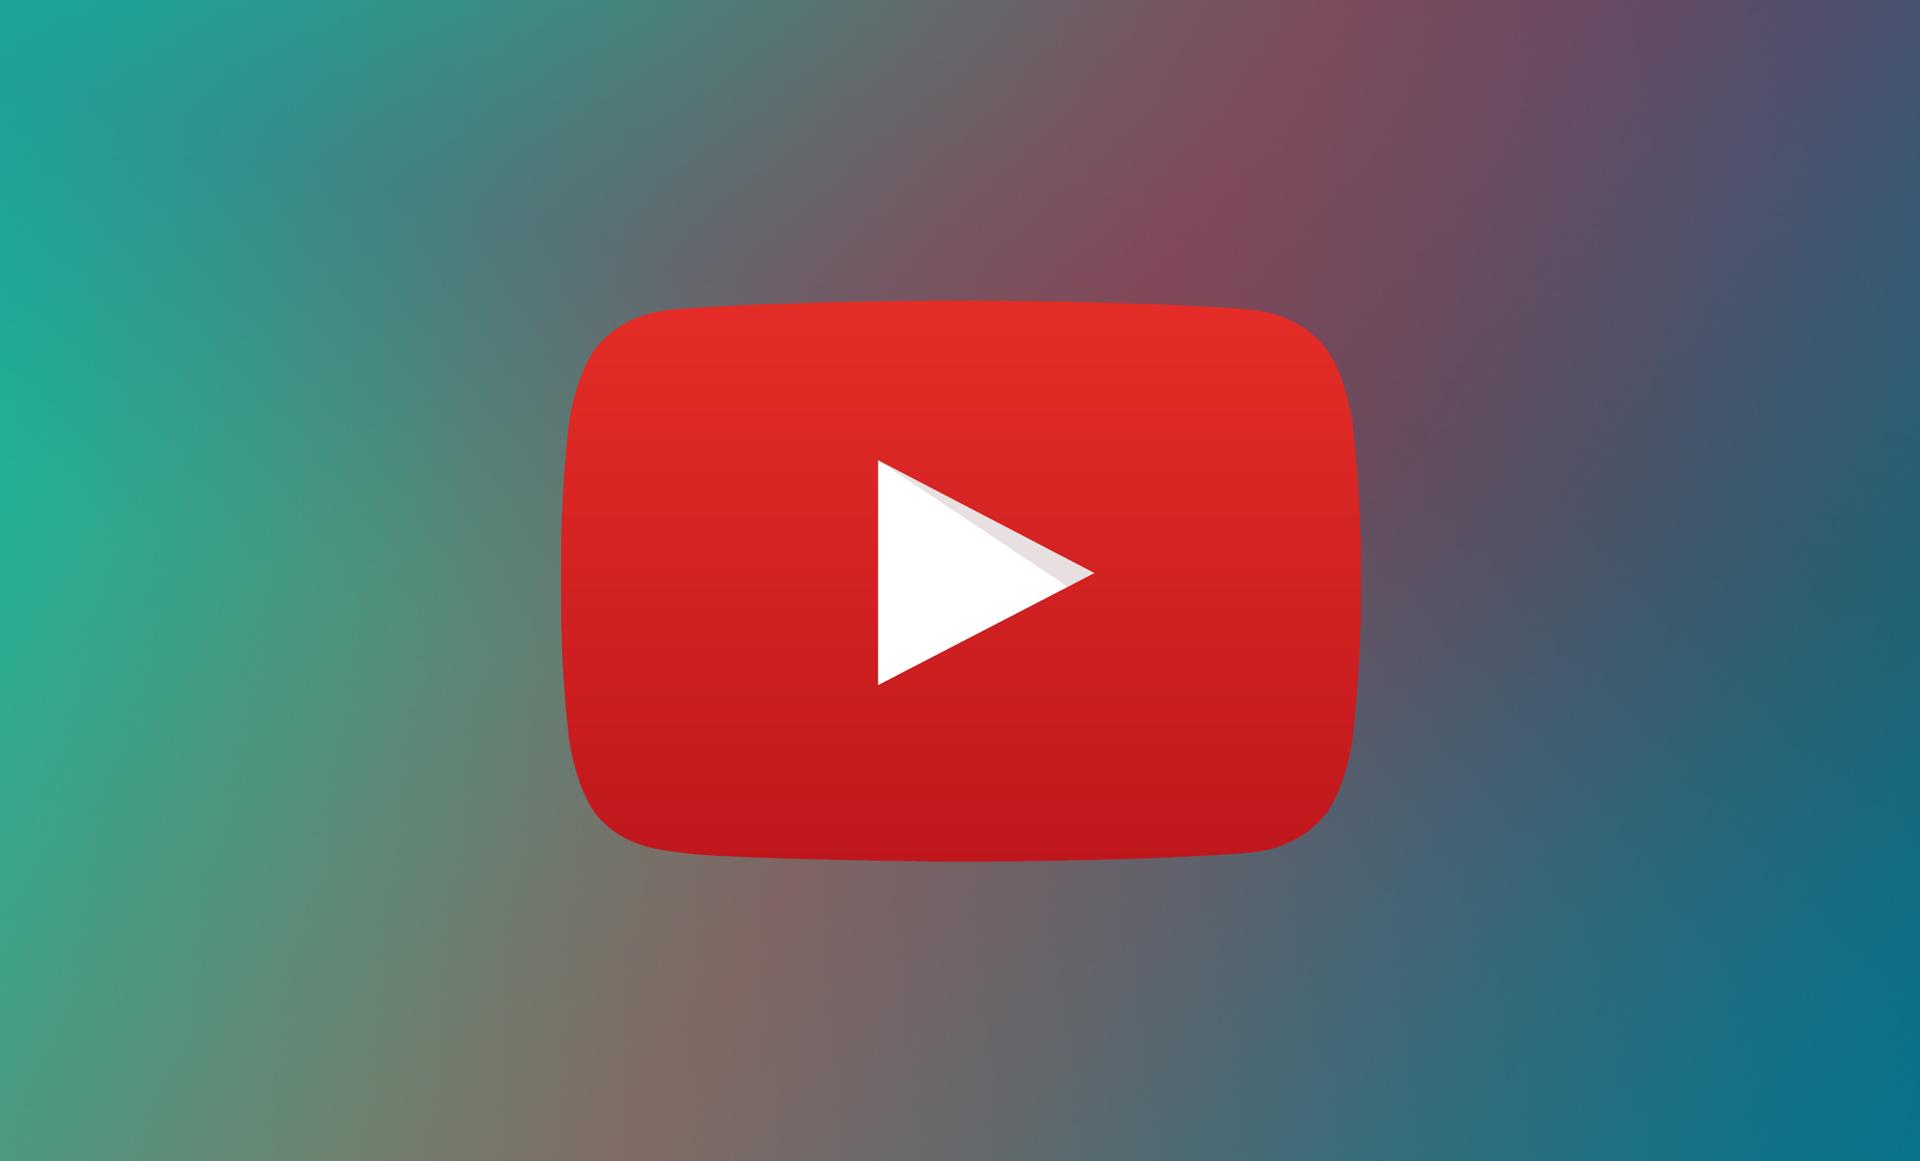 Empresas removem publicidade do YouTube após acusações sobre rede de pedofilia no site